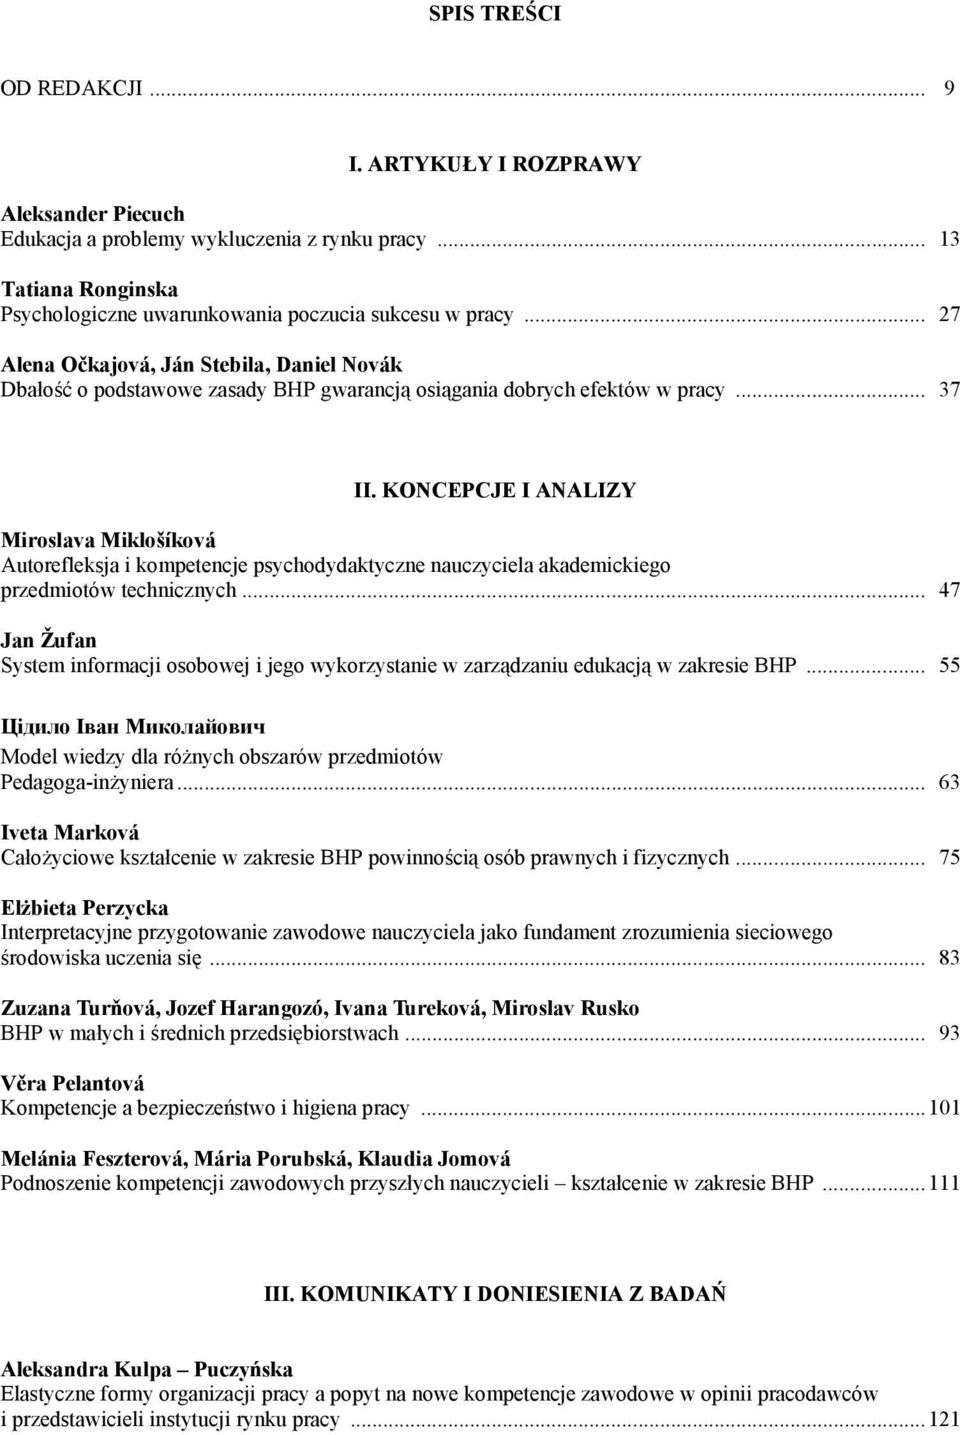 KONCEPCJE I ANALIZY Miroslava Miklošíková Autorefleksja i kompetencje psychodydaktyczne nauczyciela akademickiego przedmiotów technicznych.